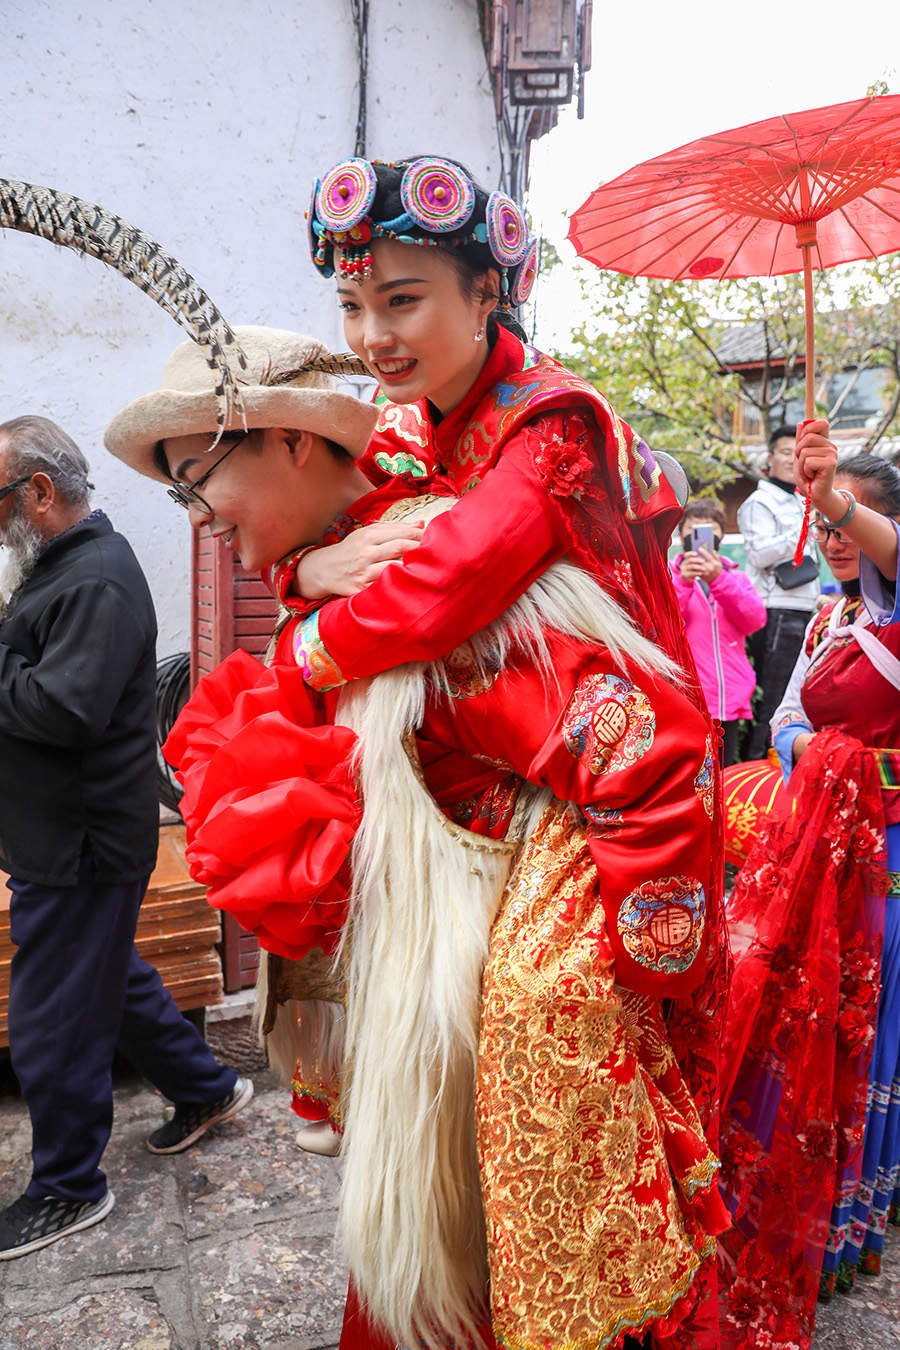 丽江纳西族婚礼图片